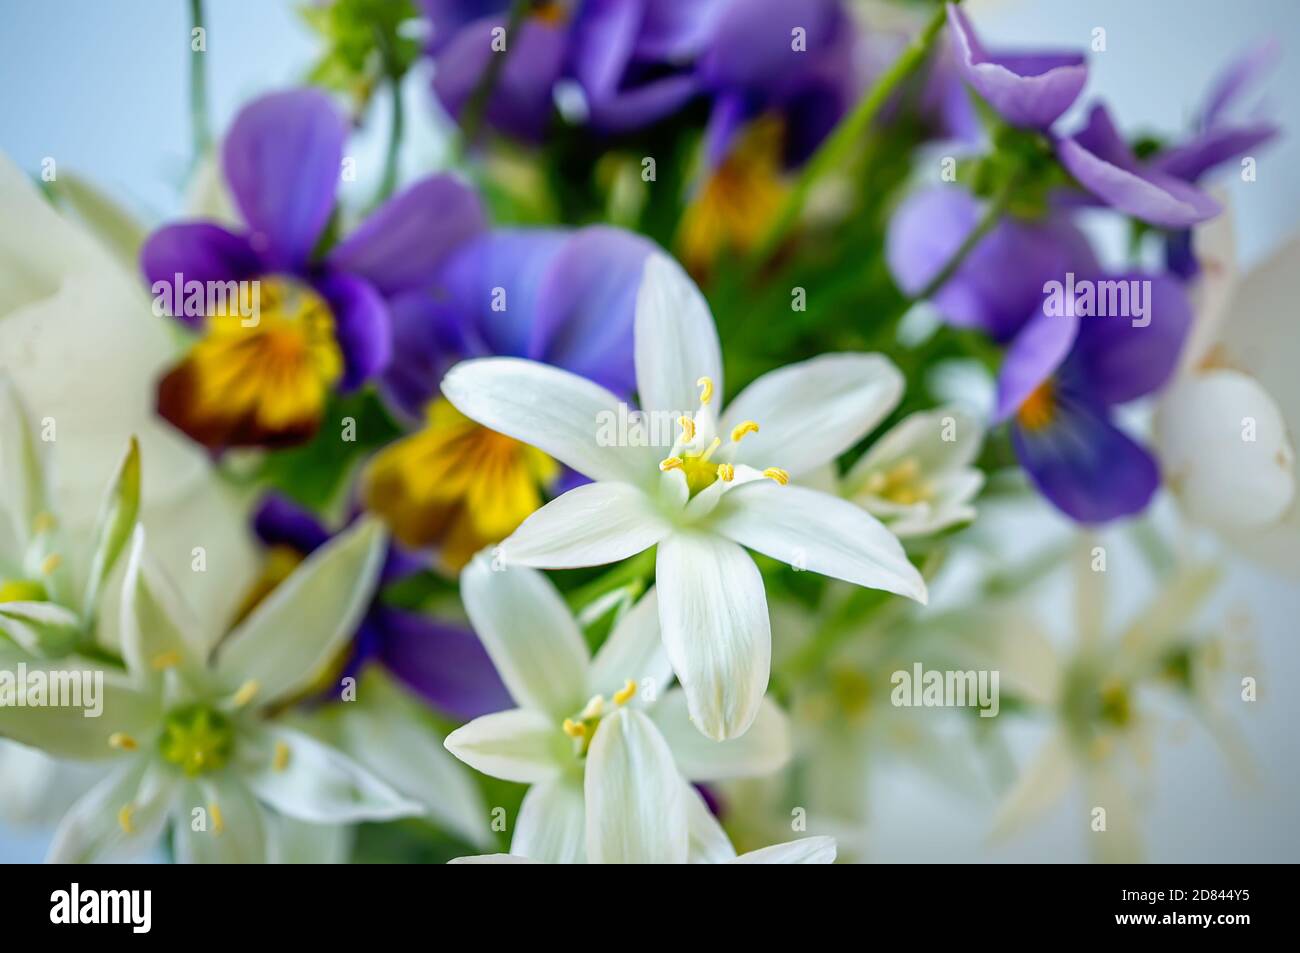 bouquet de petites fleurs d'oignon blanc sauvage et pansies violettes dans un vase. Gros plan, mise au point sélective Banque D'Images